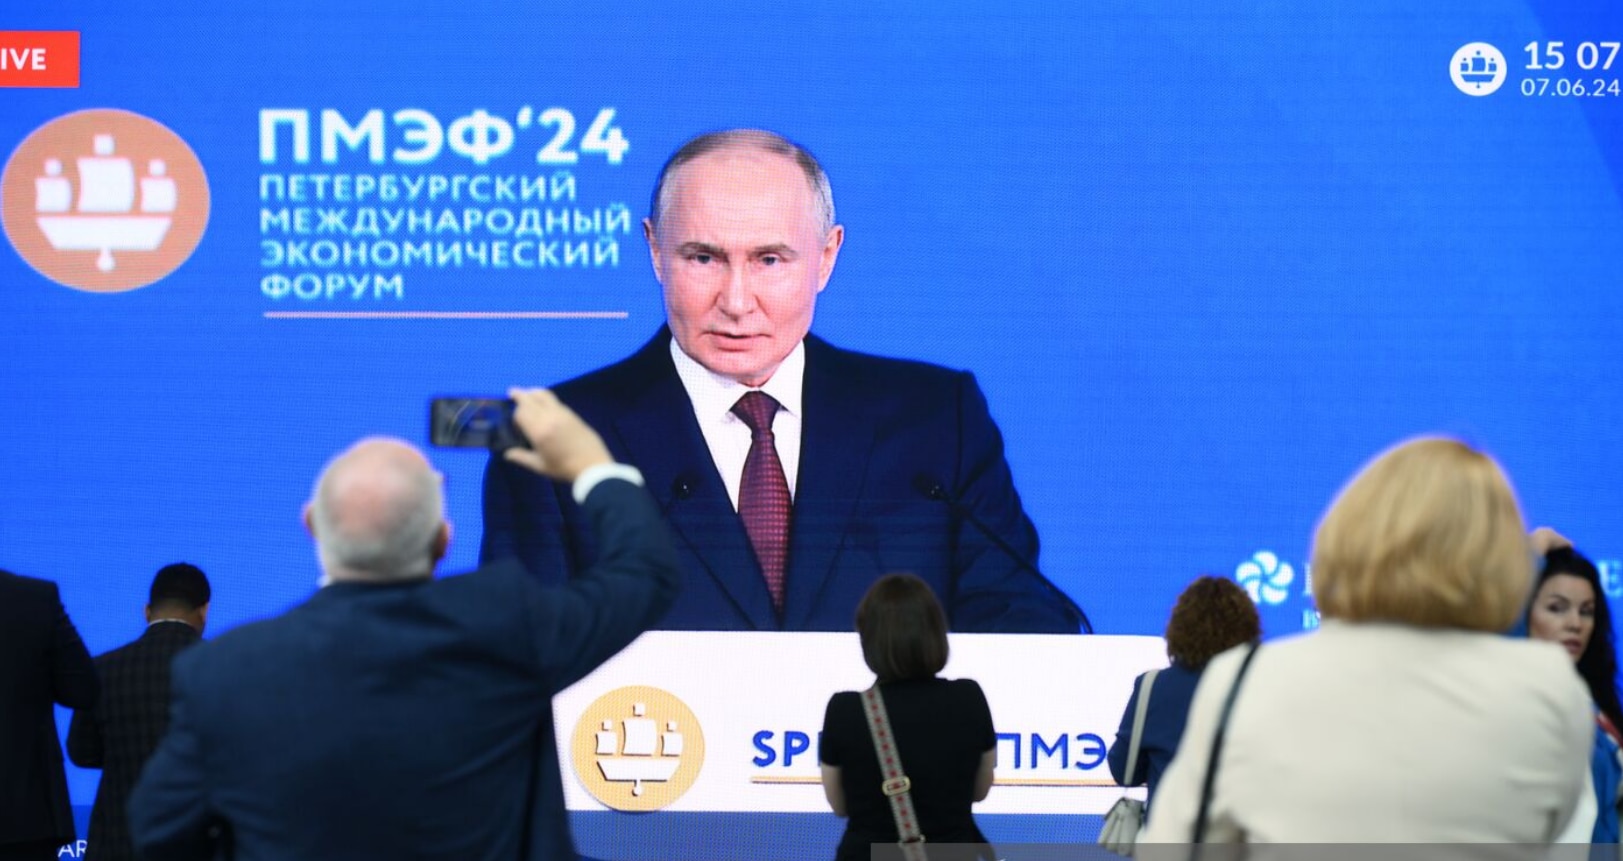 Thế giới - Ngoại trưởng Nga kêu gọi phương Tây tin tưởng lời ông Putin nói